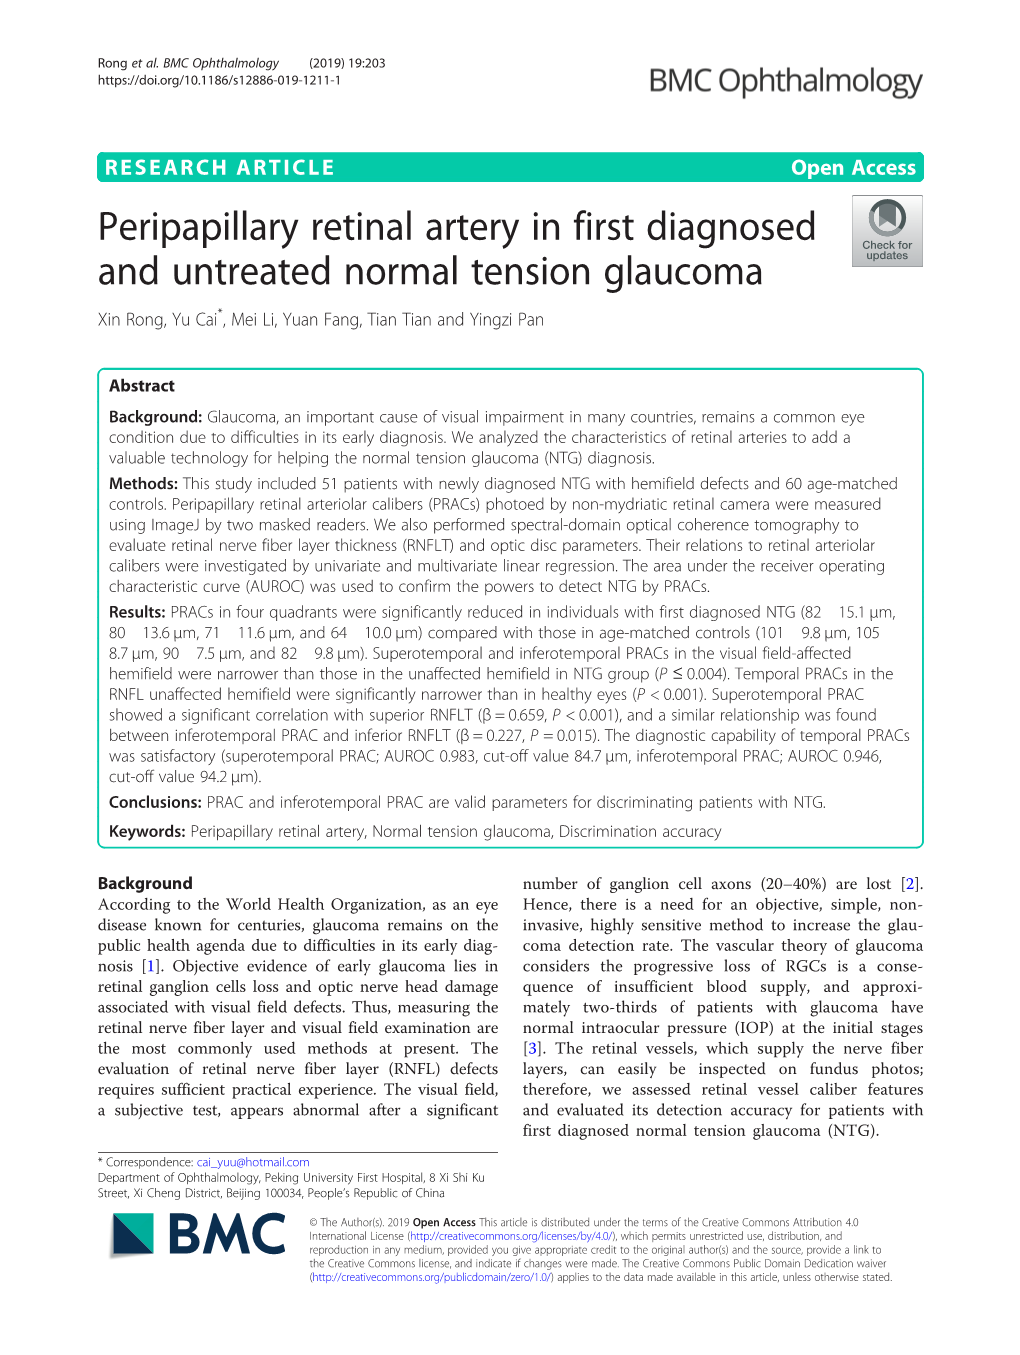 Peripapillary Retinal Artery in First Diagnosed and Untreated Normal Tension Glaucoma Xin Rong, Yu Cai*, Mei Li, Yuan Fang, Tian Tian and Yingzi Pan